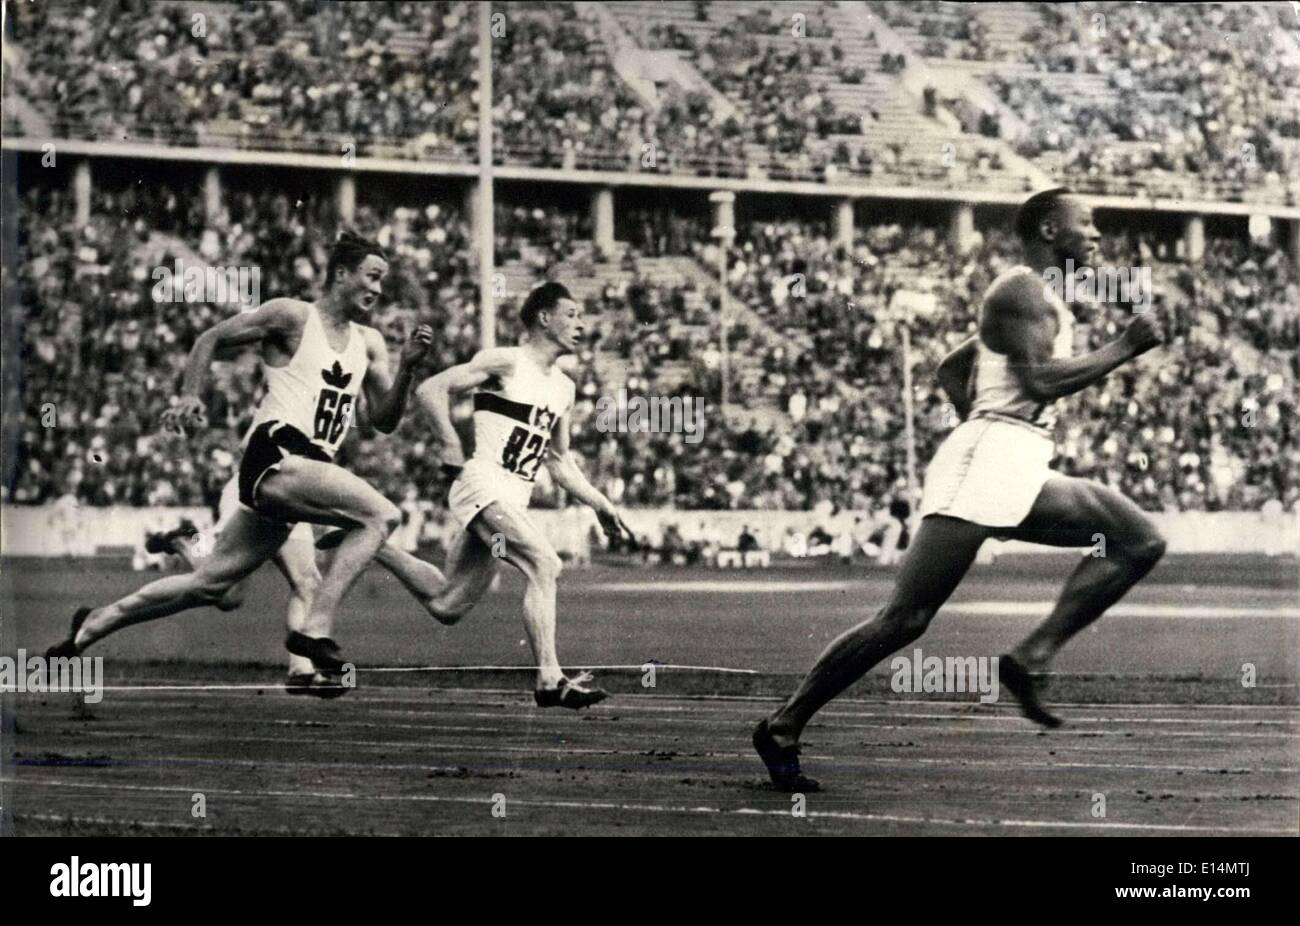 Avril 05, 2012 - Jeux Olympiques de Berlin : Jesse Owens en battant le record de 200 mètres en 20,7 secondes (temps selon l'Associated Press Almanac) Banque D'Images